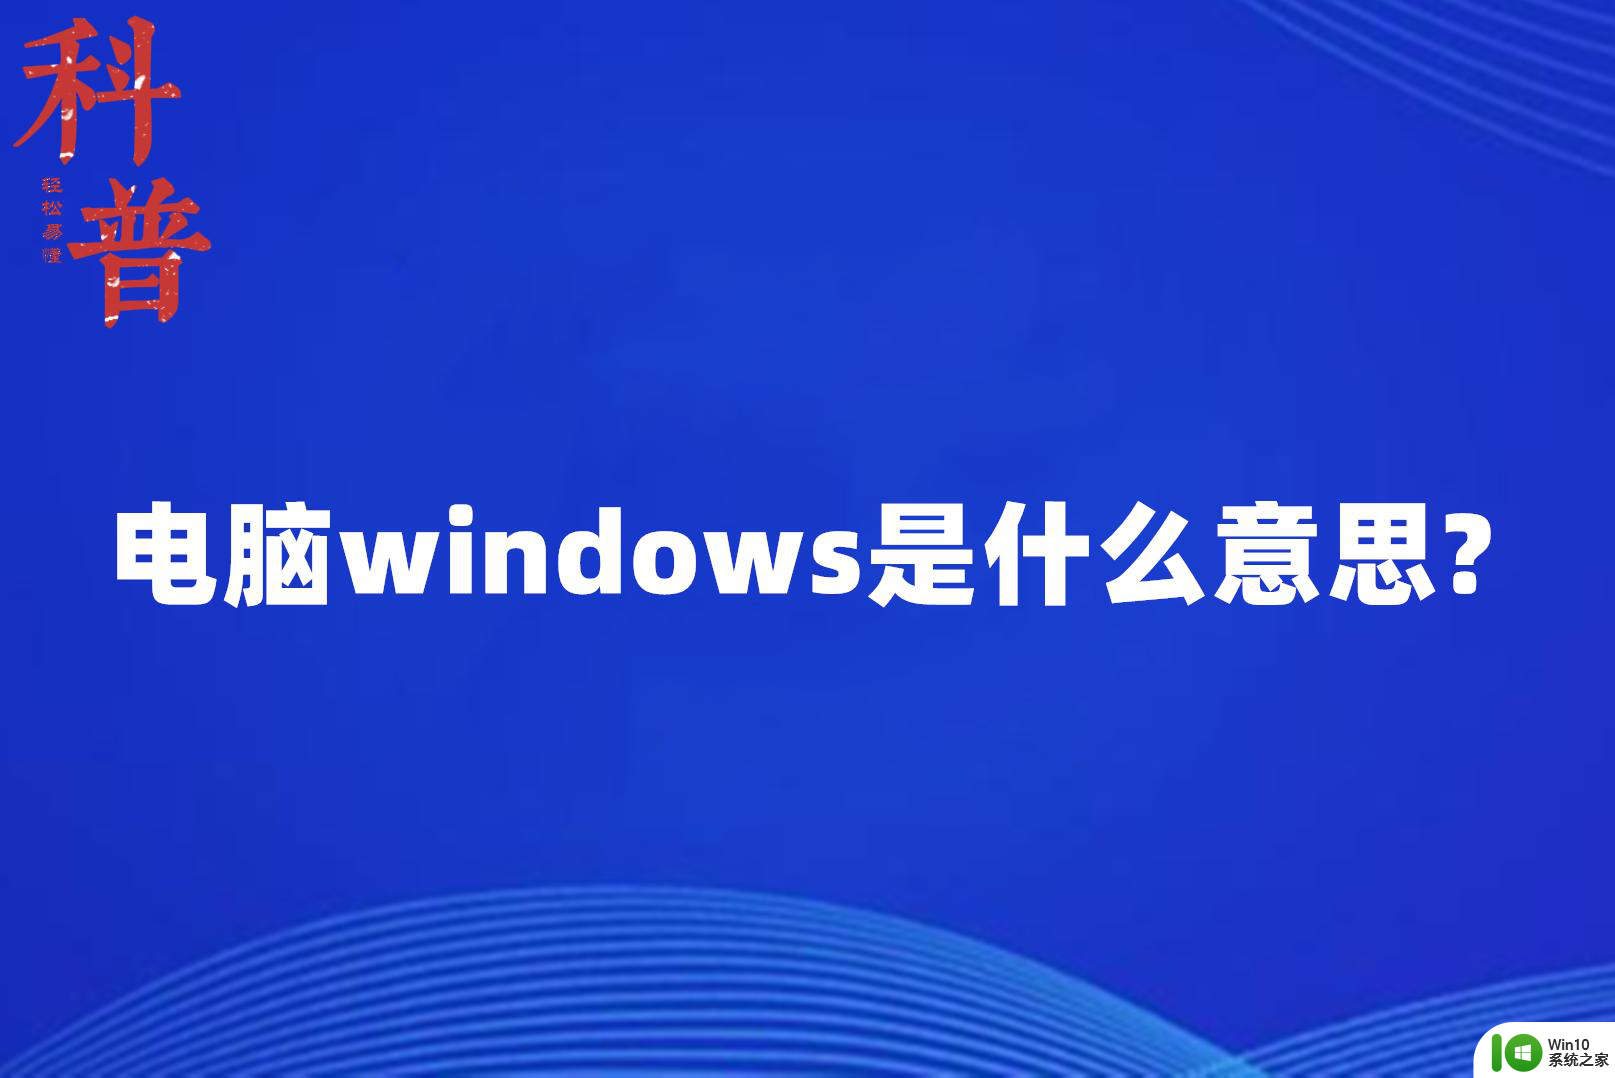 windows操作是什么意思 windows软件是什么意思